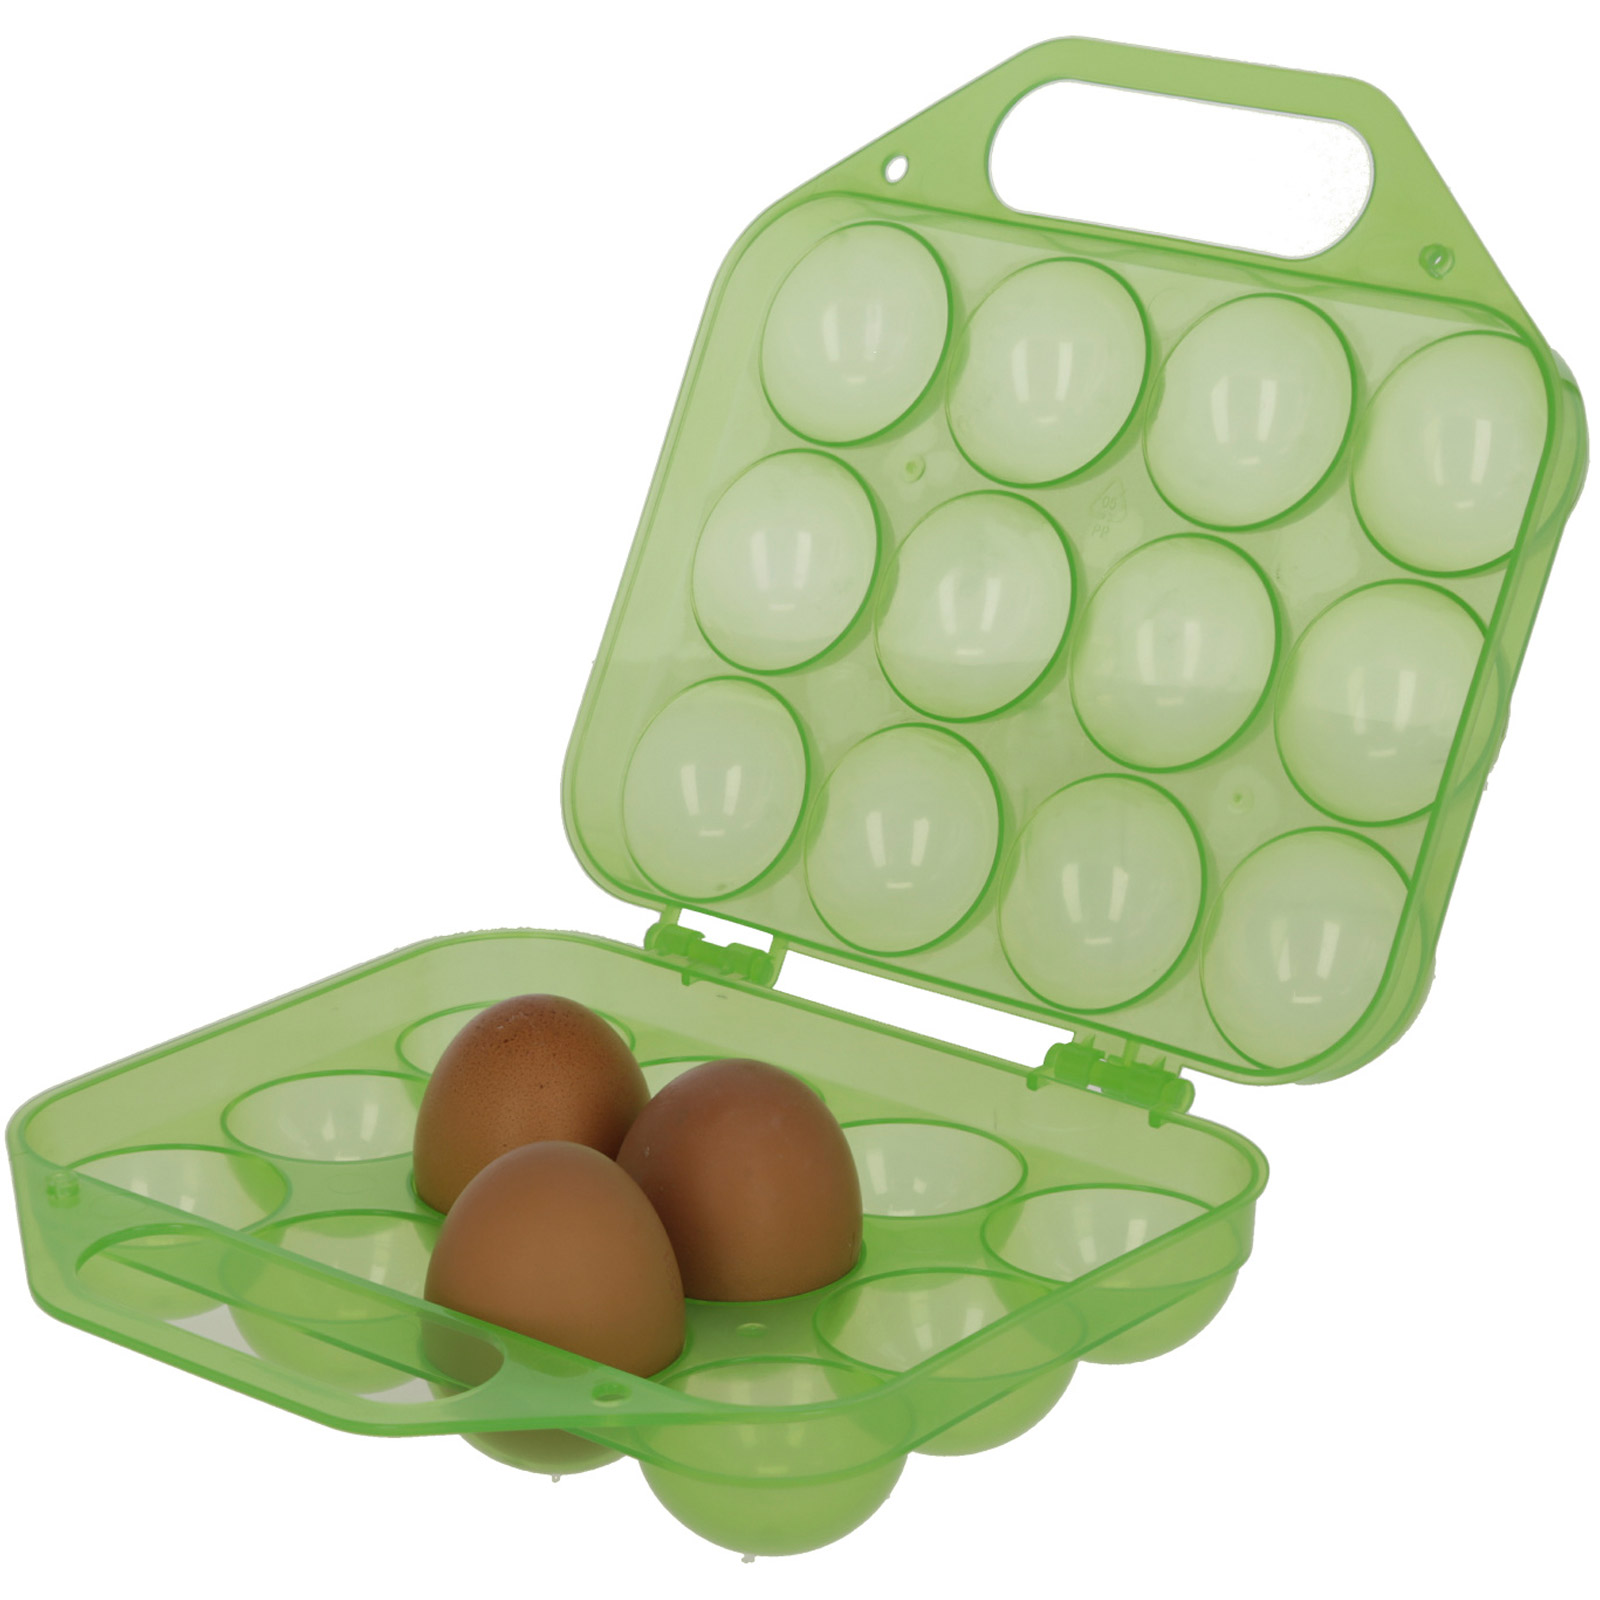 Äggtransportlåda av plast för 12 ägg, grön